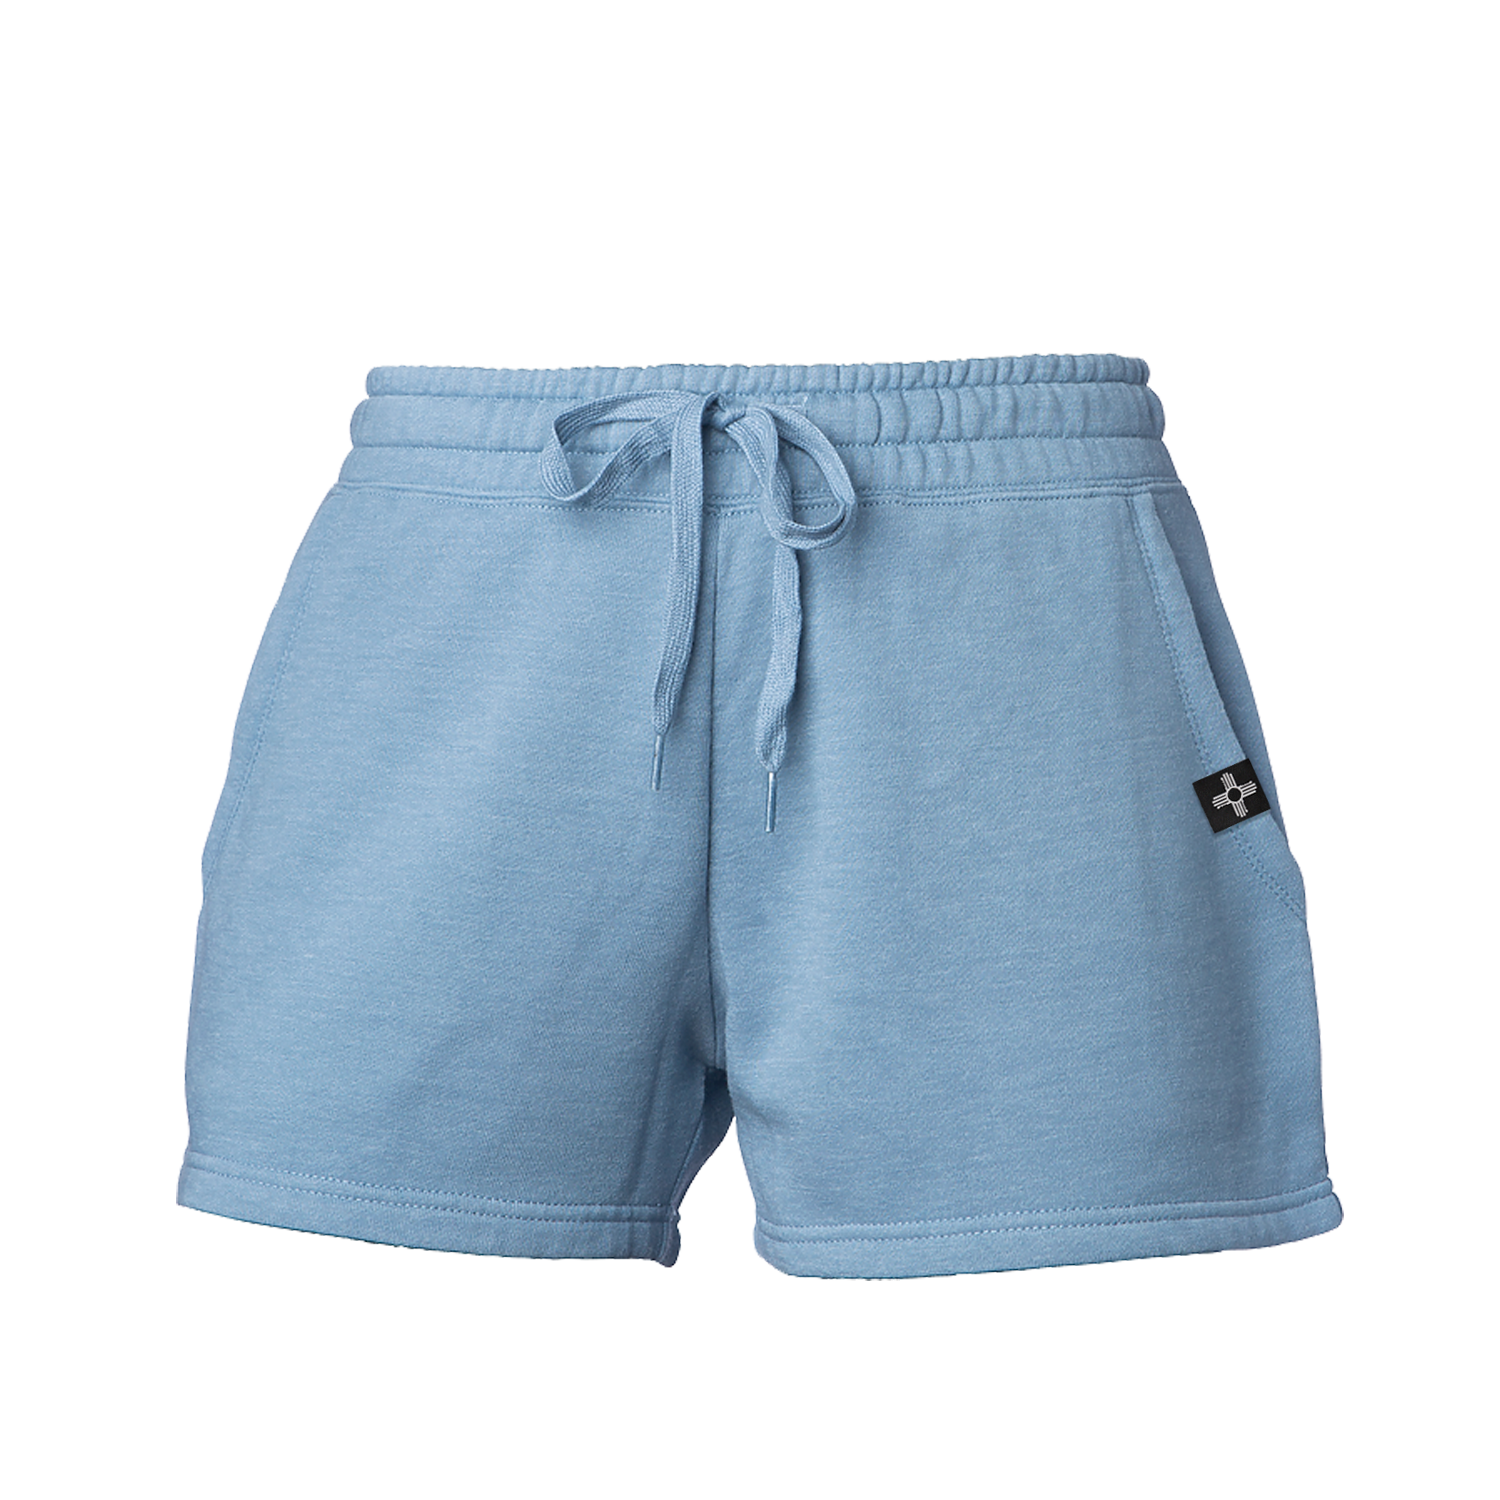 Women's Fleece Shorts – FS2 Supply Co.